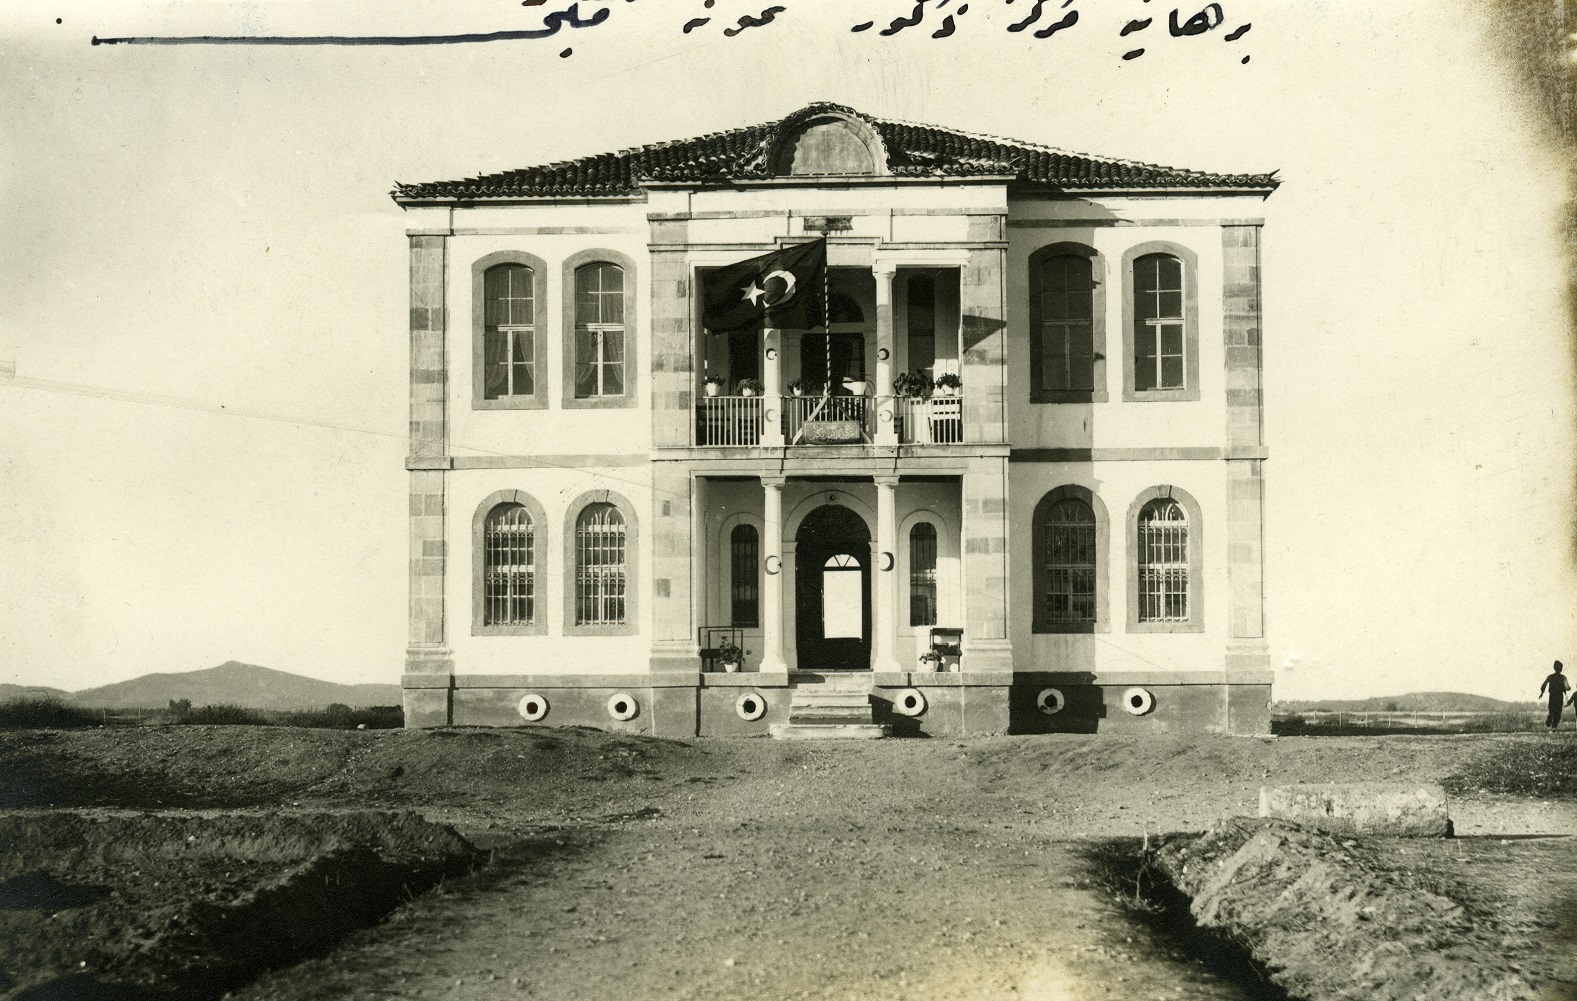 BALIKESİR, BURHANİYE MERKEZ ZÜKUR (ERKEK) NUMUNE MEKTEBİ, 1923